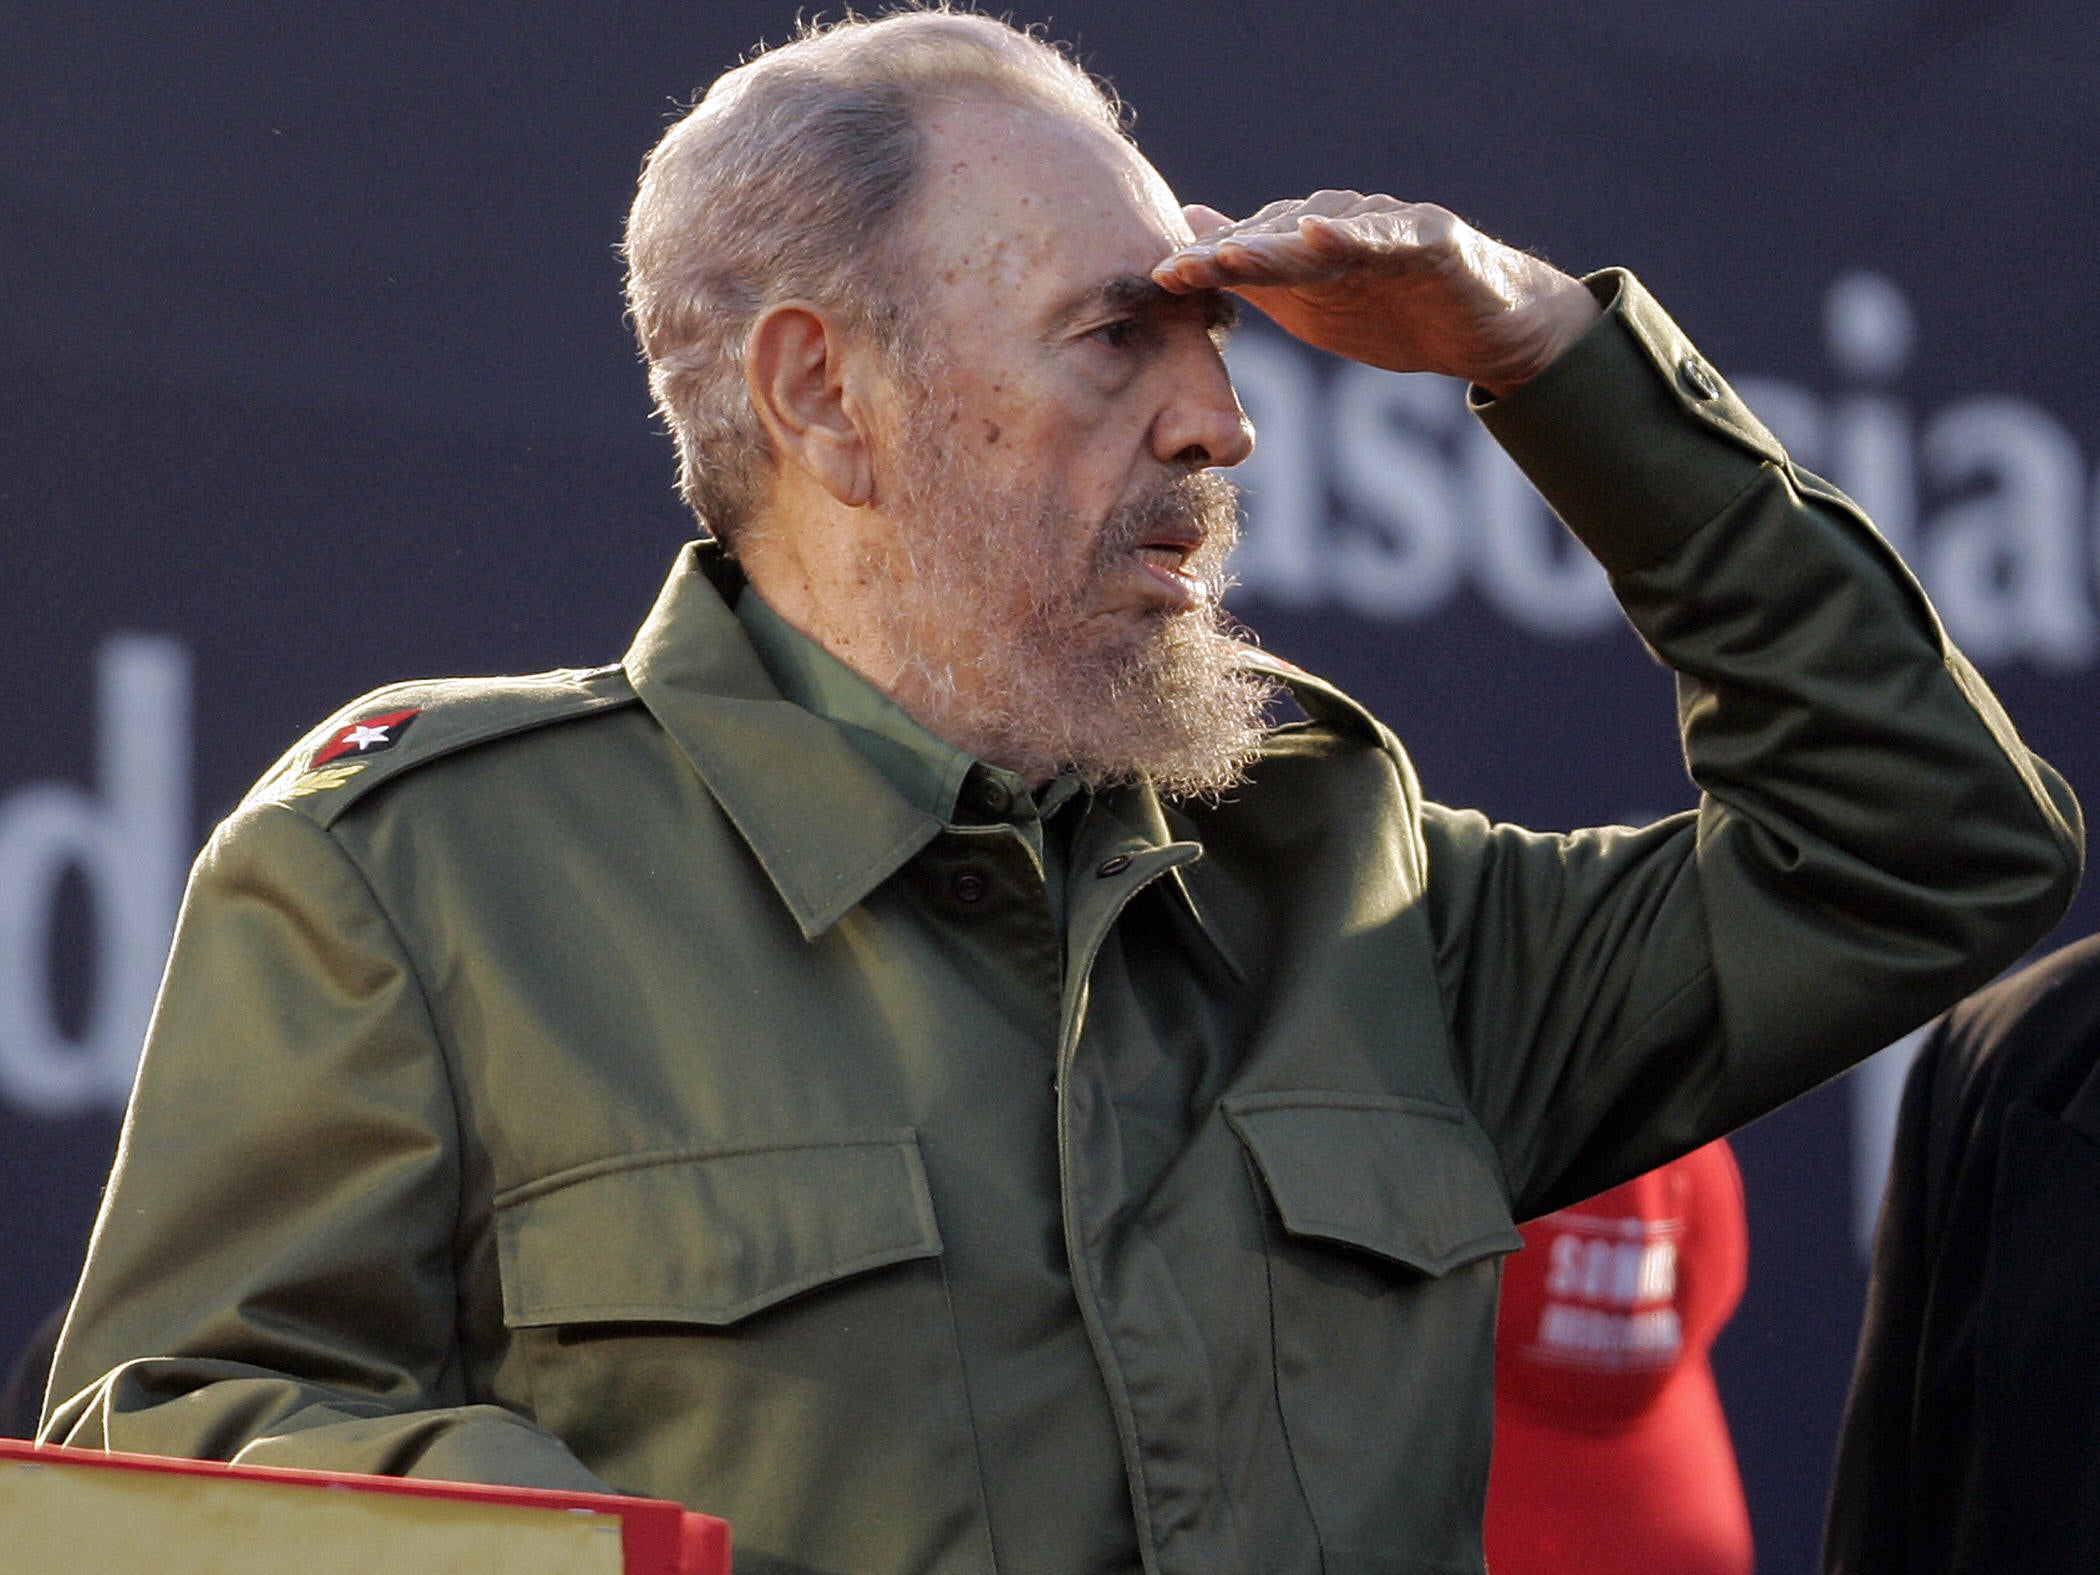 Fidel Castro Photo Collection